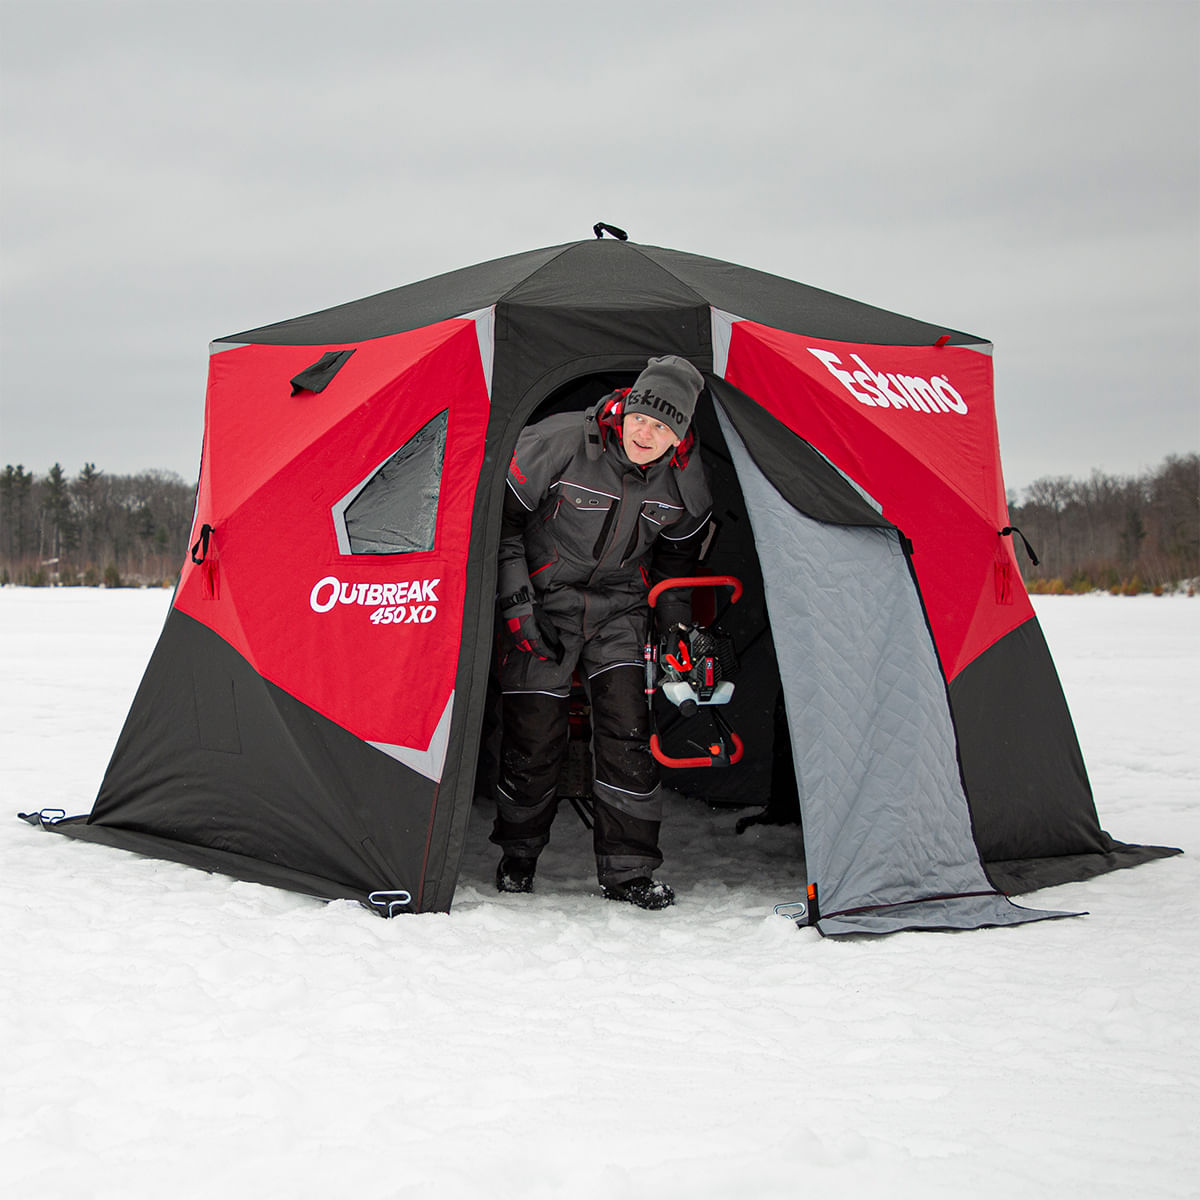 Eskimo Outbreak 450XD Ice Fishing Shelter 